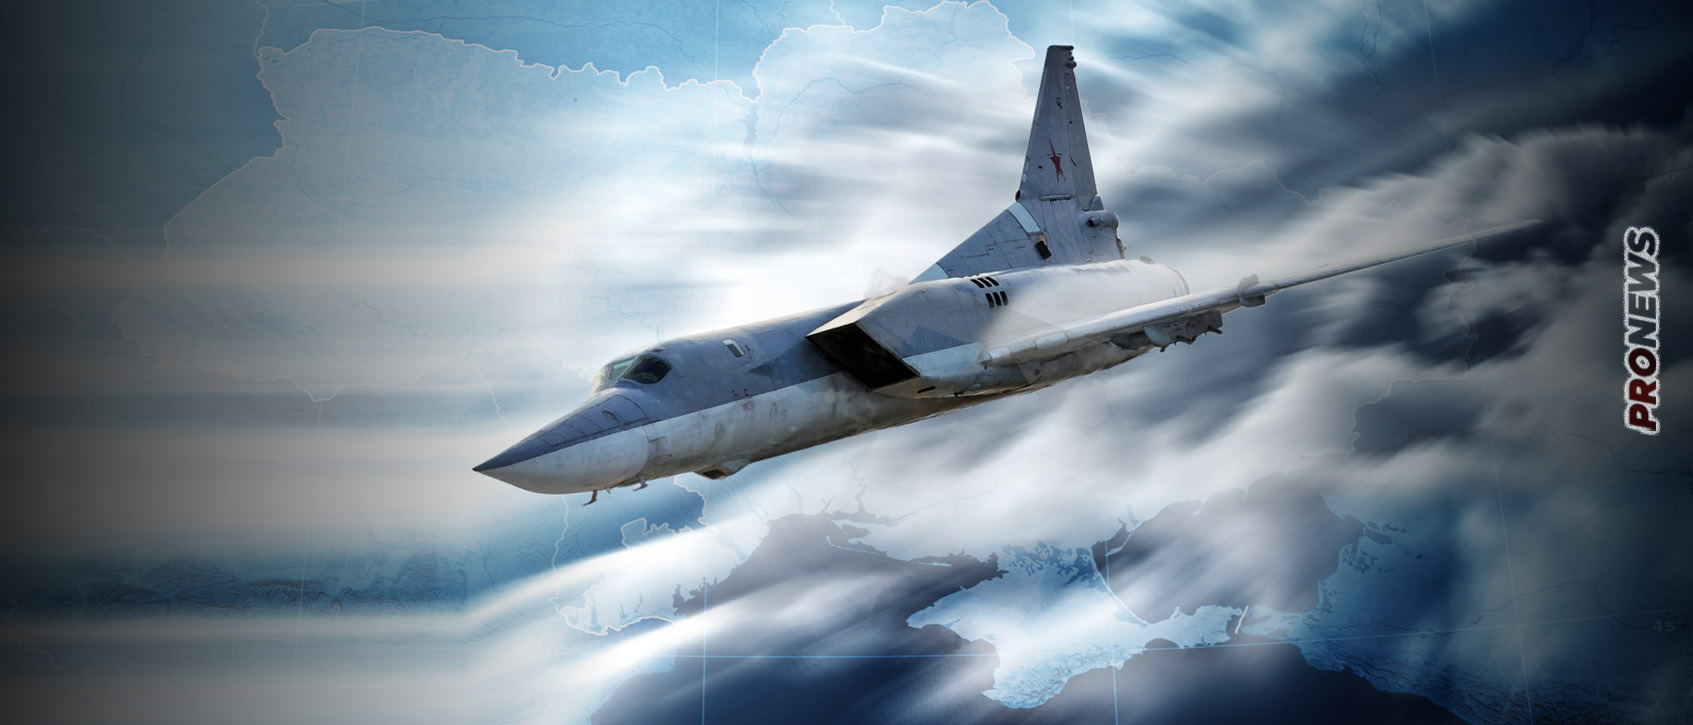 Μαζικές επιθέσεις στην Ουκρανία: Ρωσικά βομβαρδιστικά και UAV κατέστρεψαν αποθήκες σε Ζαπορίζια, Σούμι, Τσερκάσι